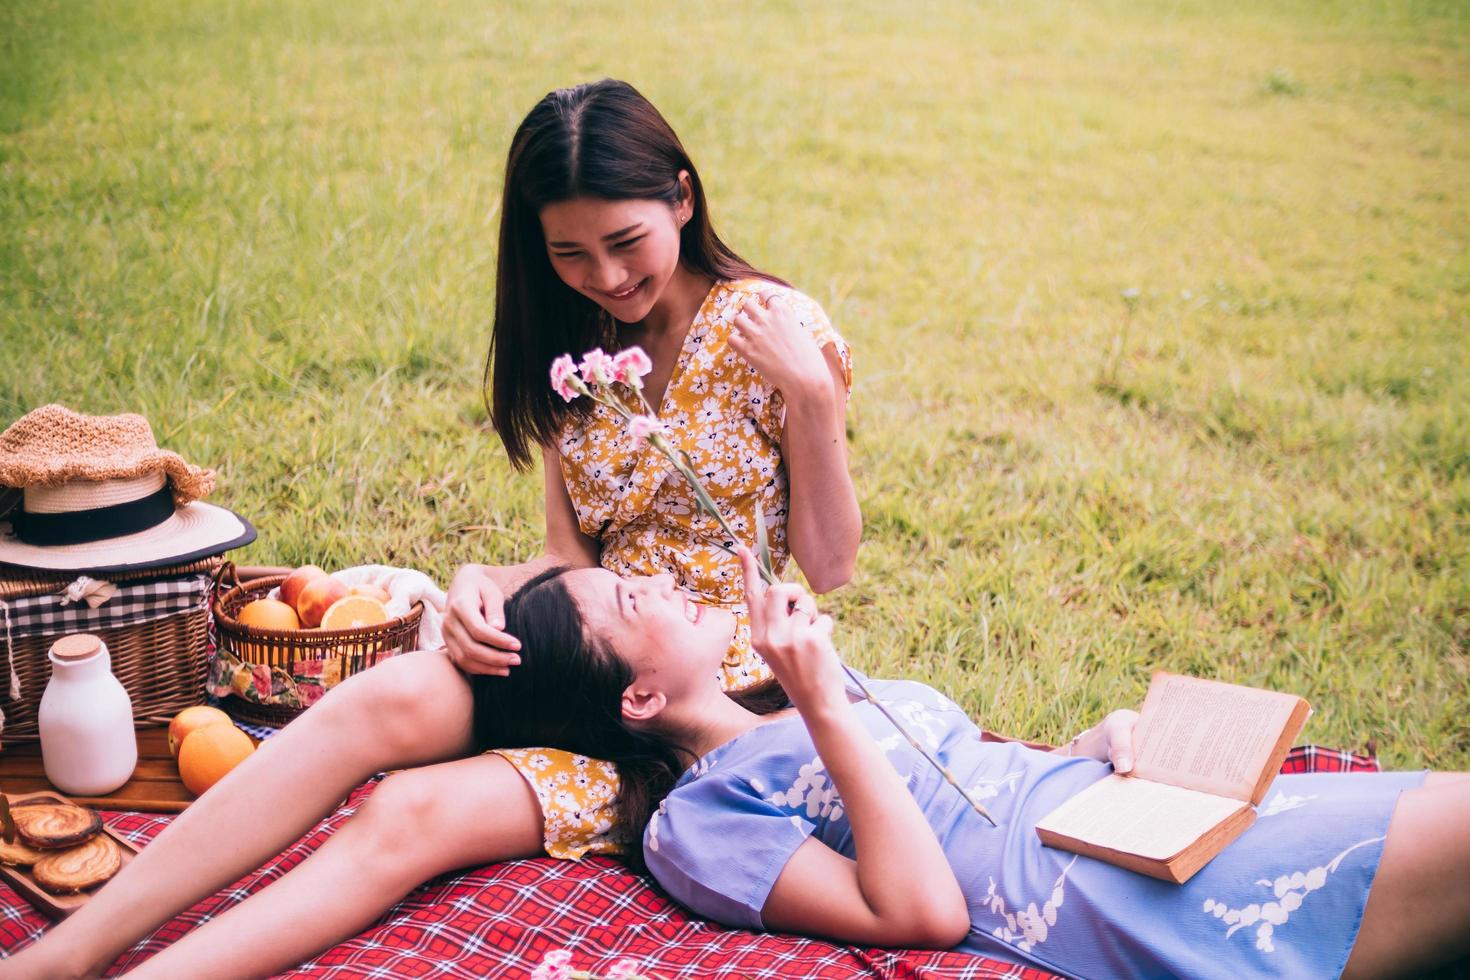 två kvinna vänner njuter picknick tillsammans i en parkera. foto